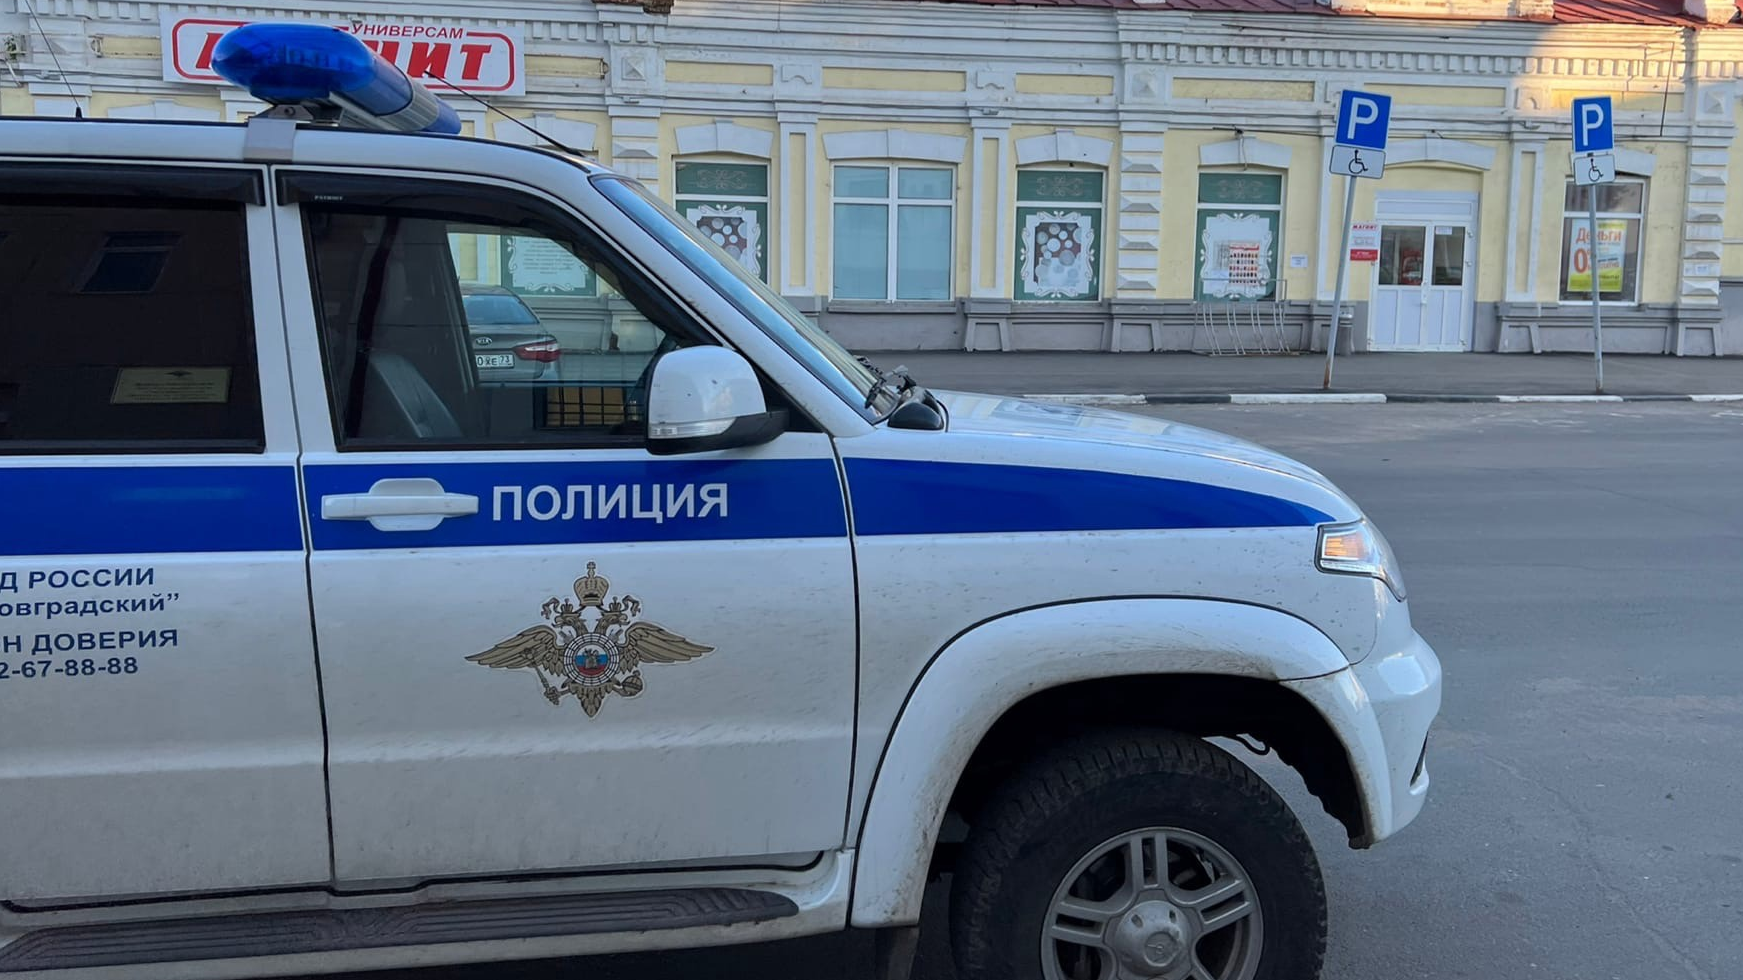 В Ульяновской области в суд направили уголовное дело о покушении на сбыт гашиша: было 15 тысяч разовых доз наркотика